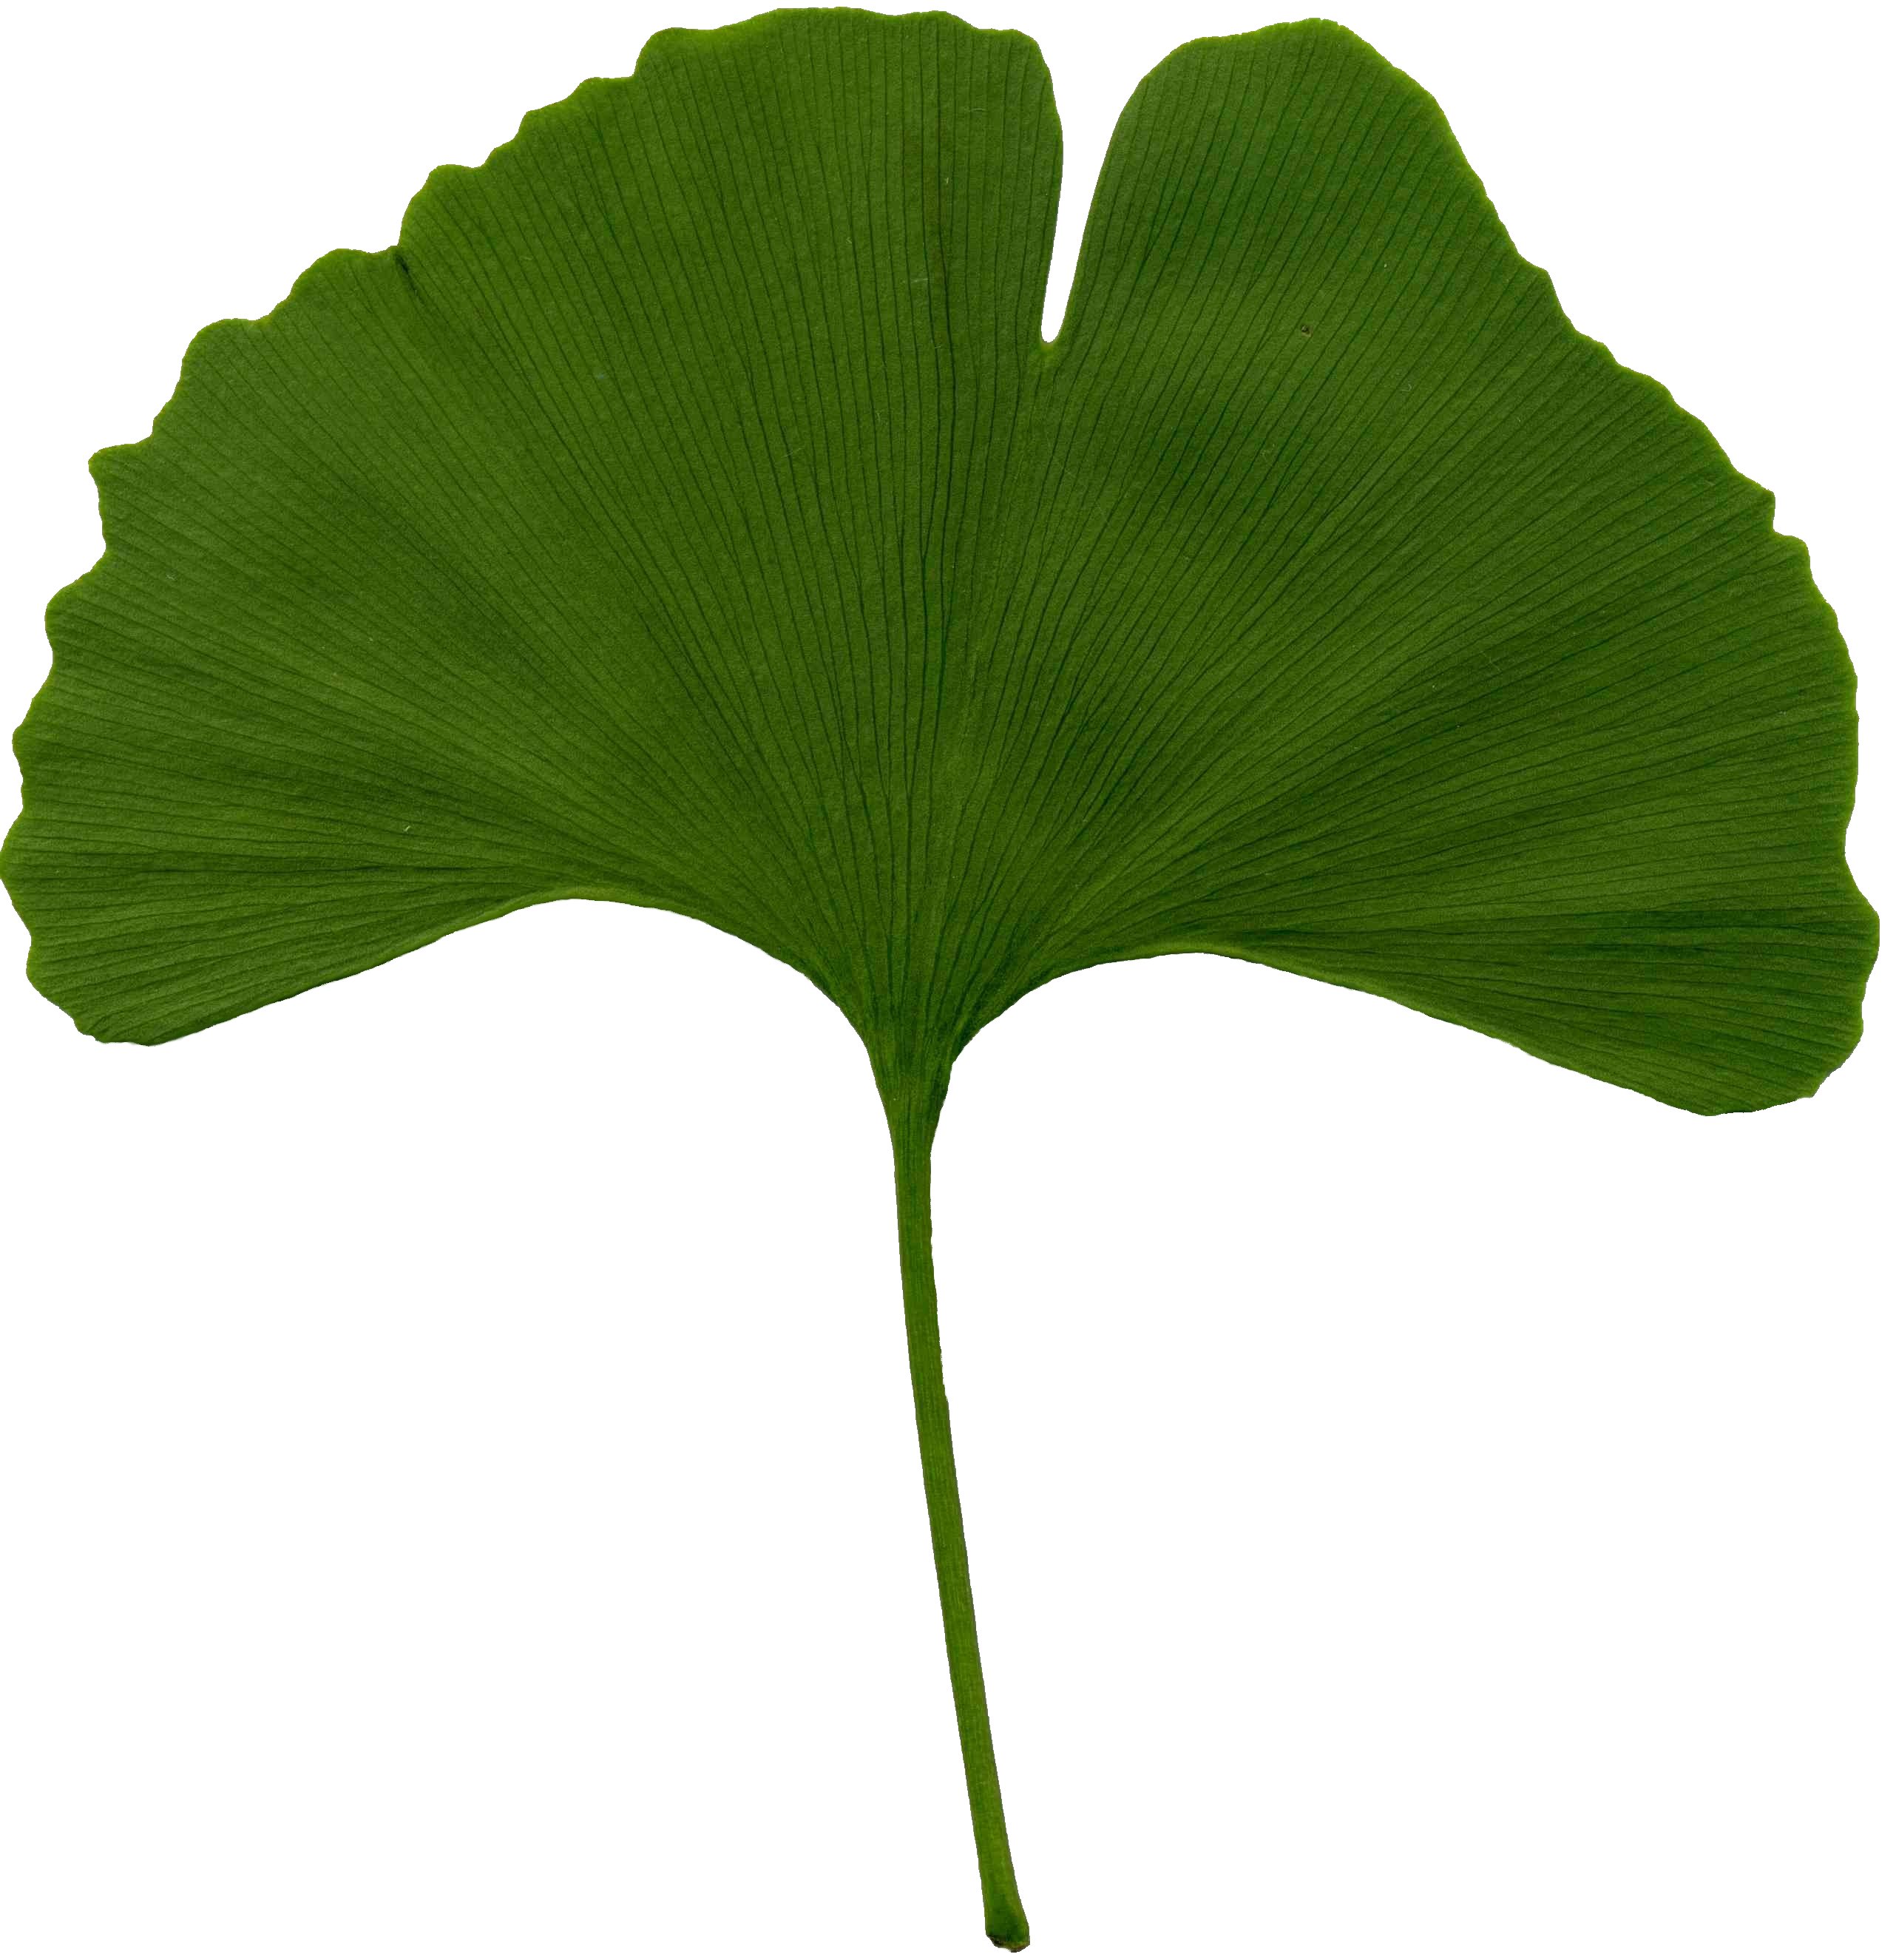 File:Ginkgo biloba scanned leaf.jpg - Wikimedia Commons